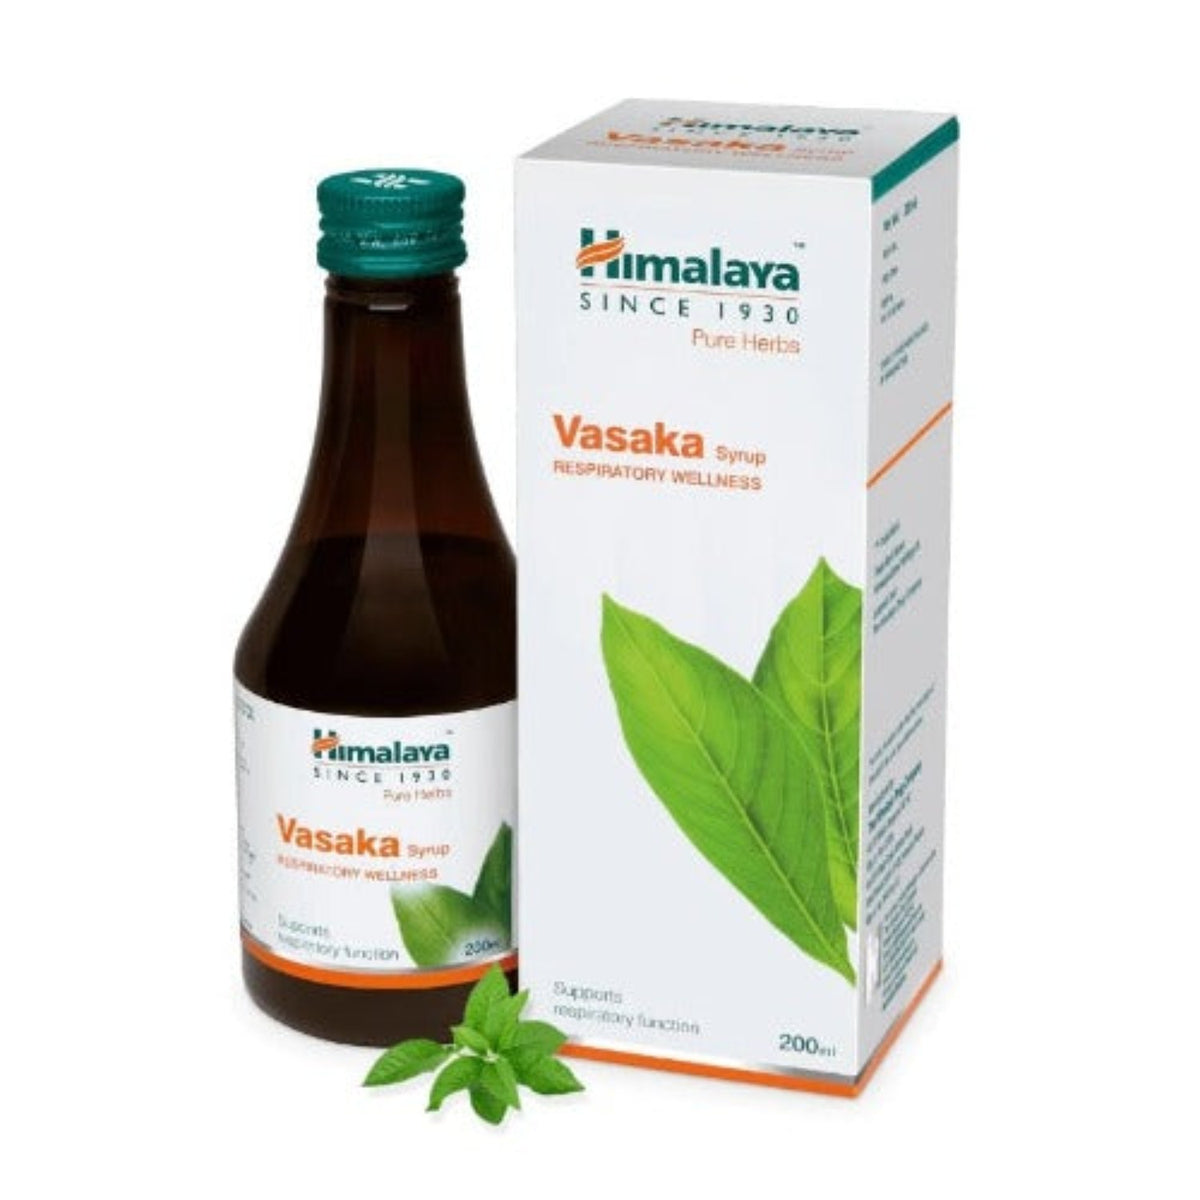 Himalaya Pure Herbs Респираторный оздоровительный травяной аюрведический сироп Васака для эффективного ухода за органами дыхания 200 мл